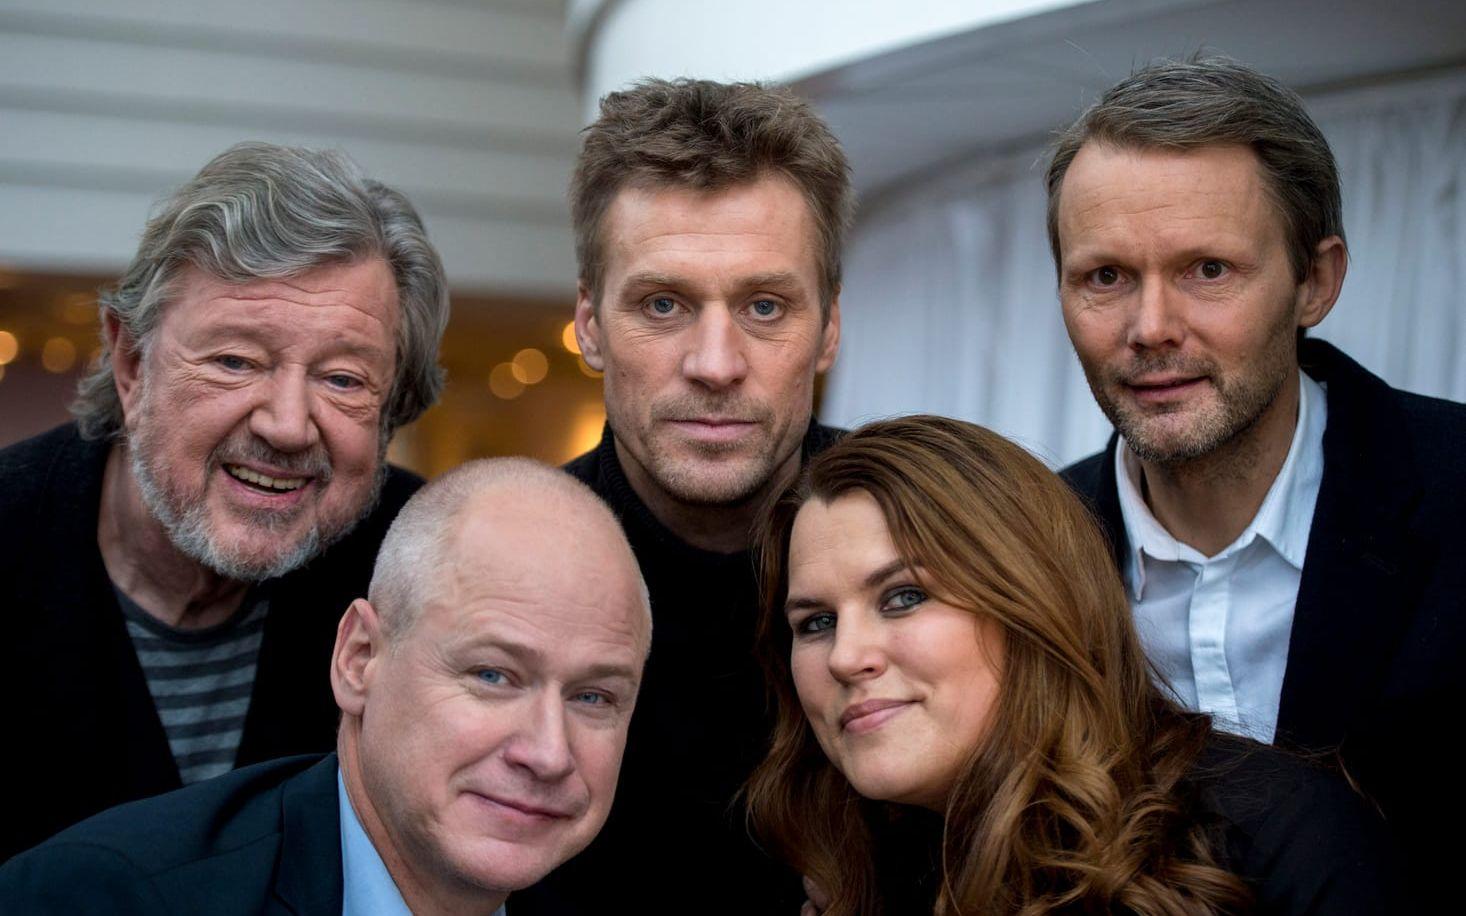 Skådespelarna Iwar Wiklander, Robert Gustafsson, Jens Hultén, Mia Skäringer och samt regissören Felix Herngren. Foto: TT.